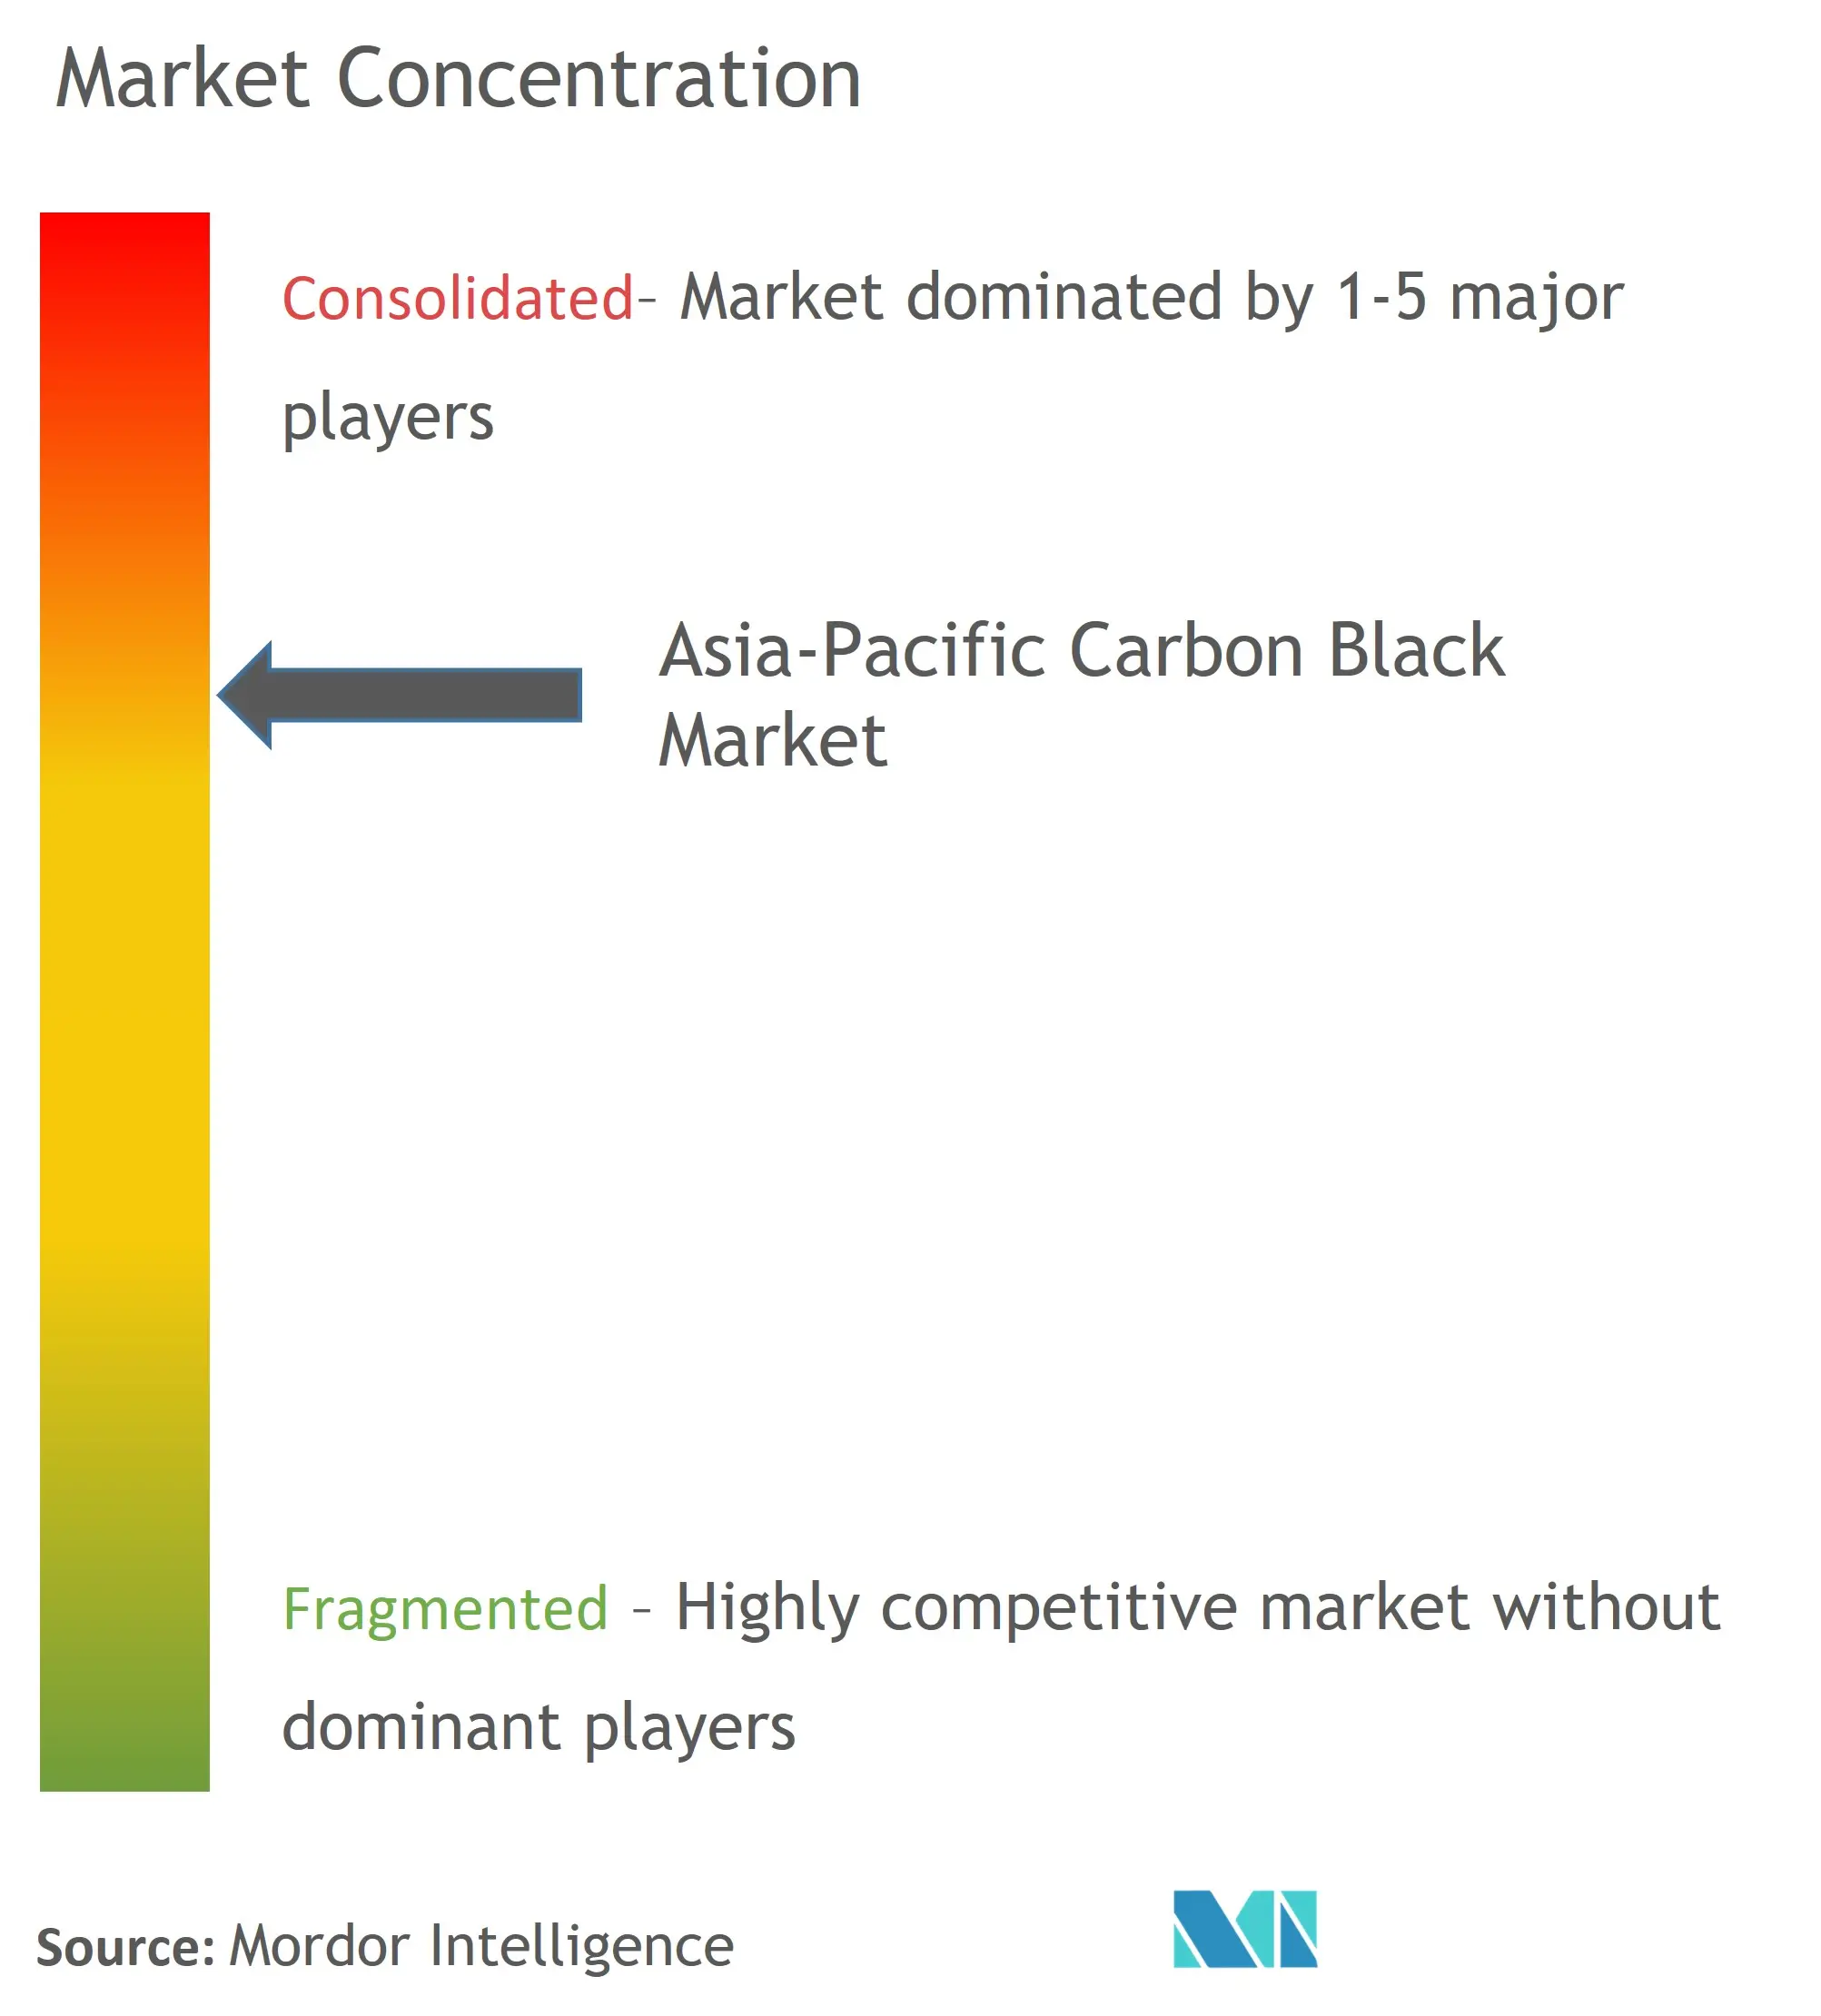 Asia-Pacific Carbon Black Market Concentration